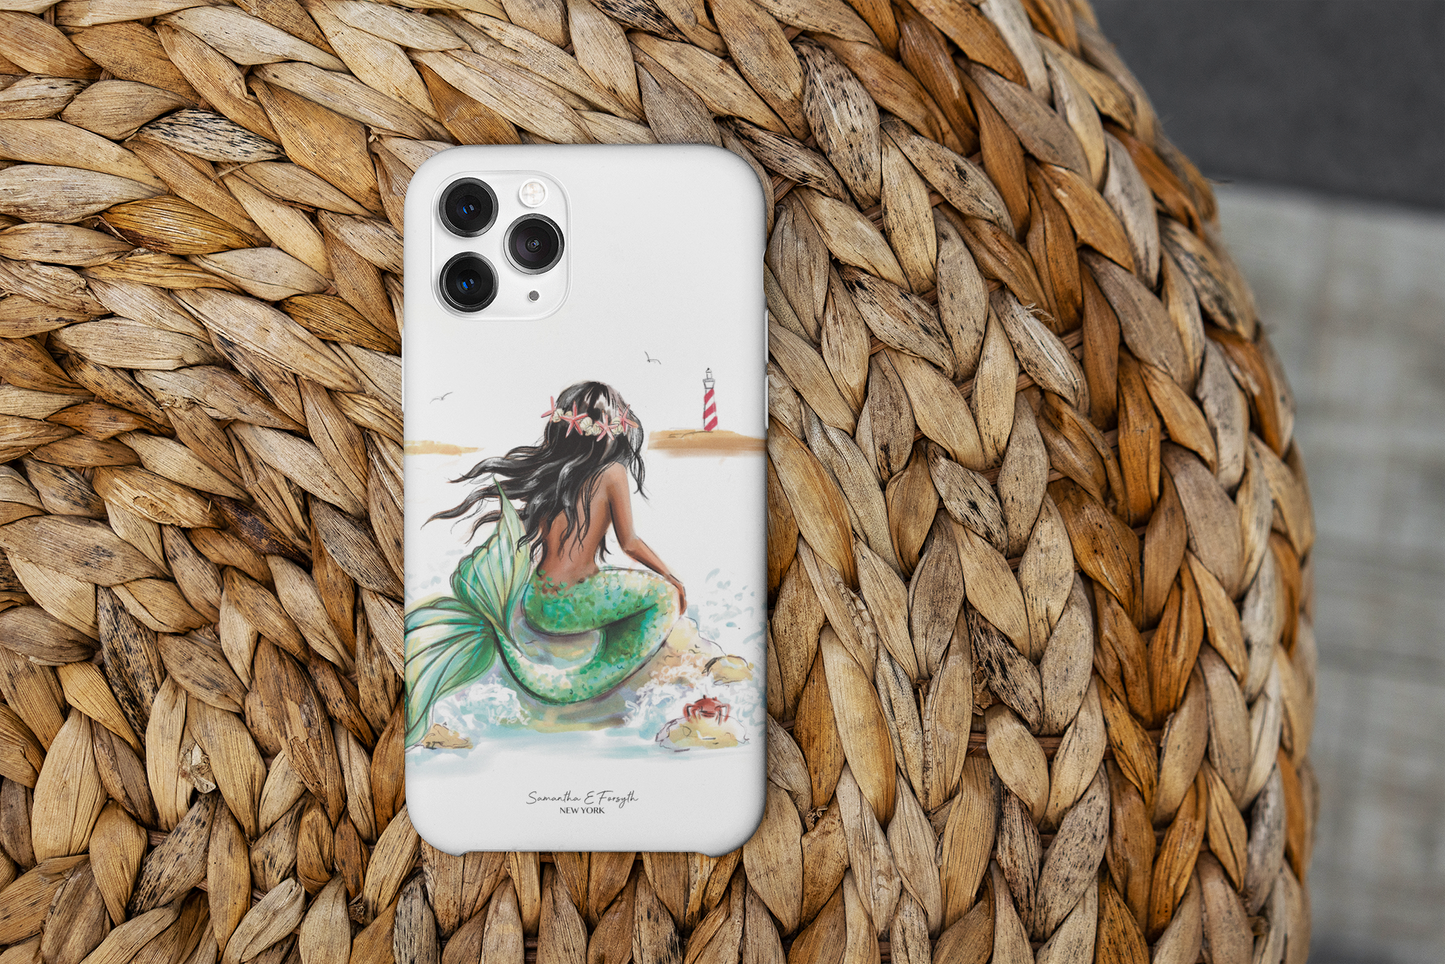 Mermaid Phone Case